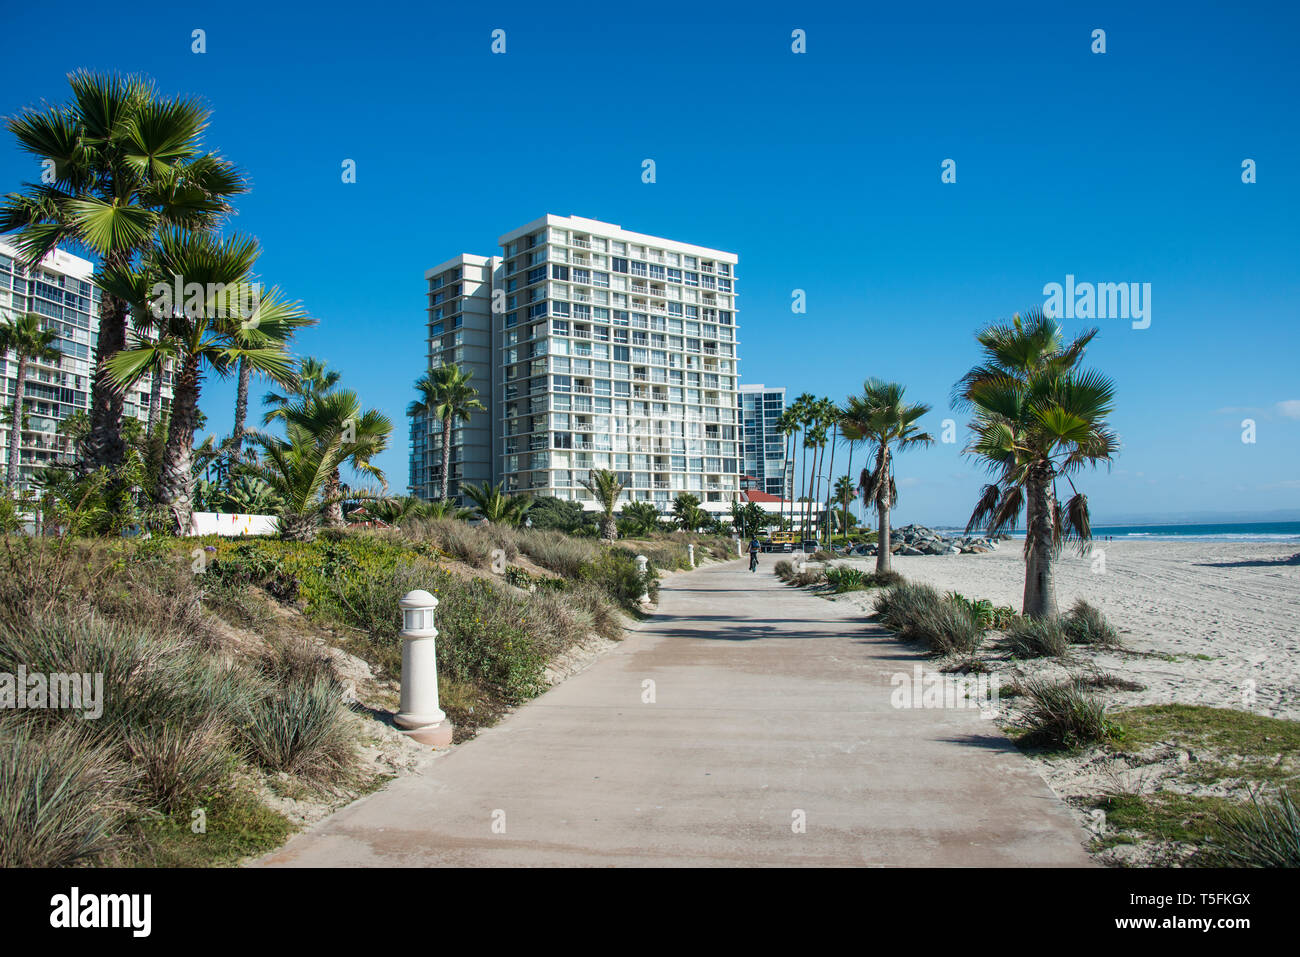 USA, California, Coronado, beach promenade Stock Photo